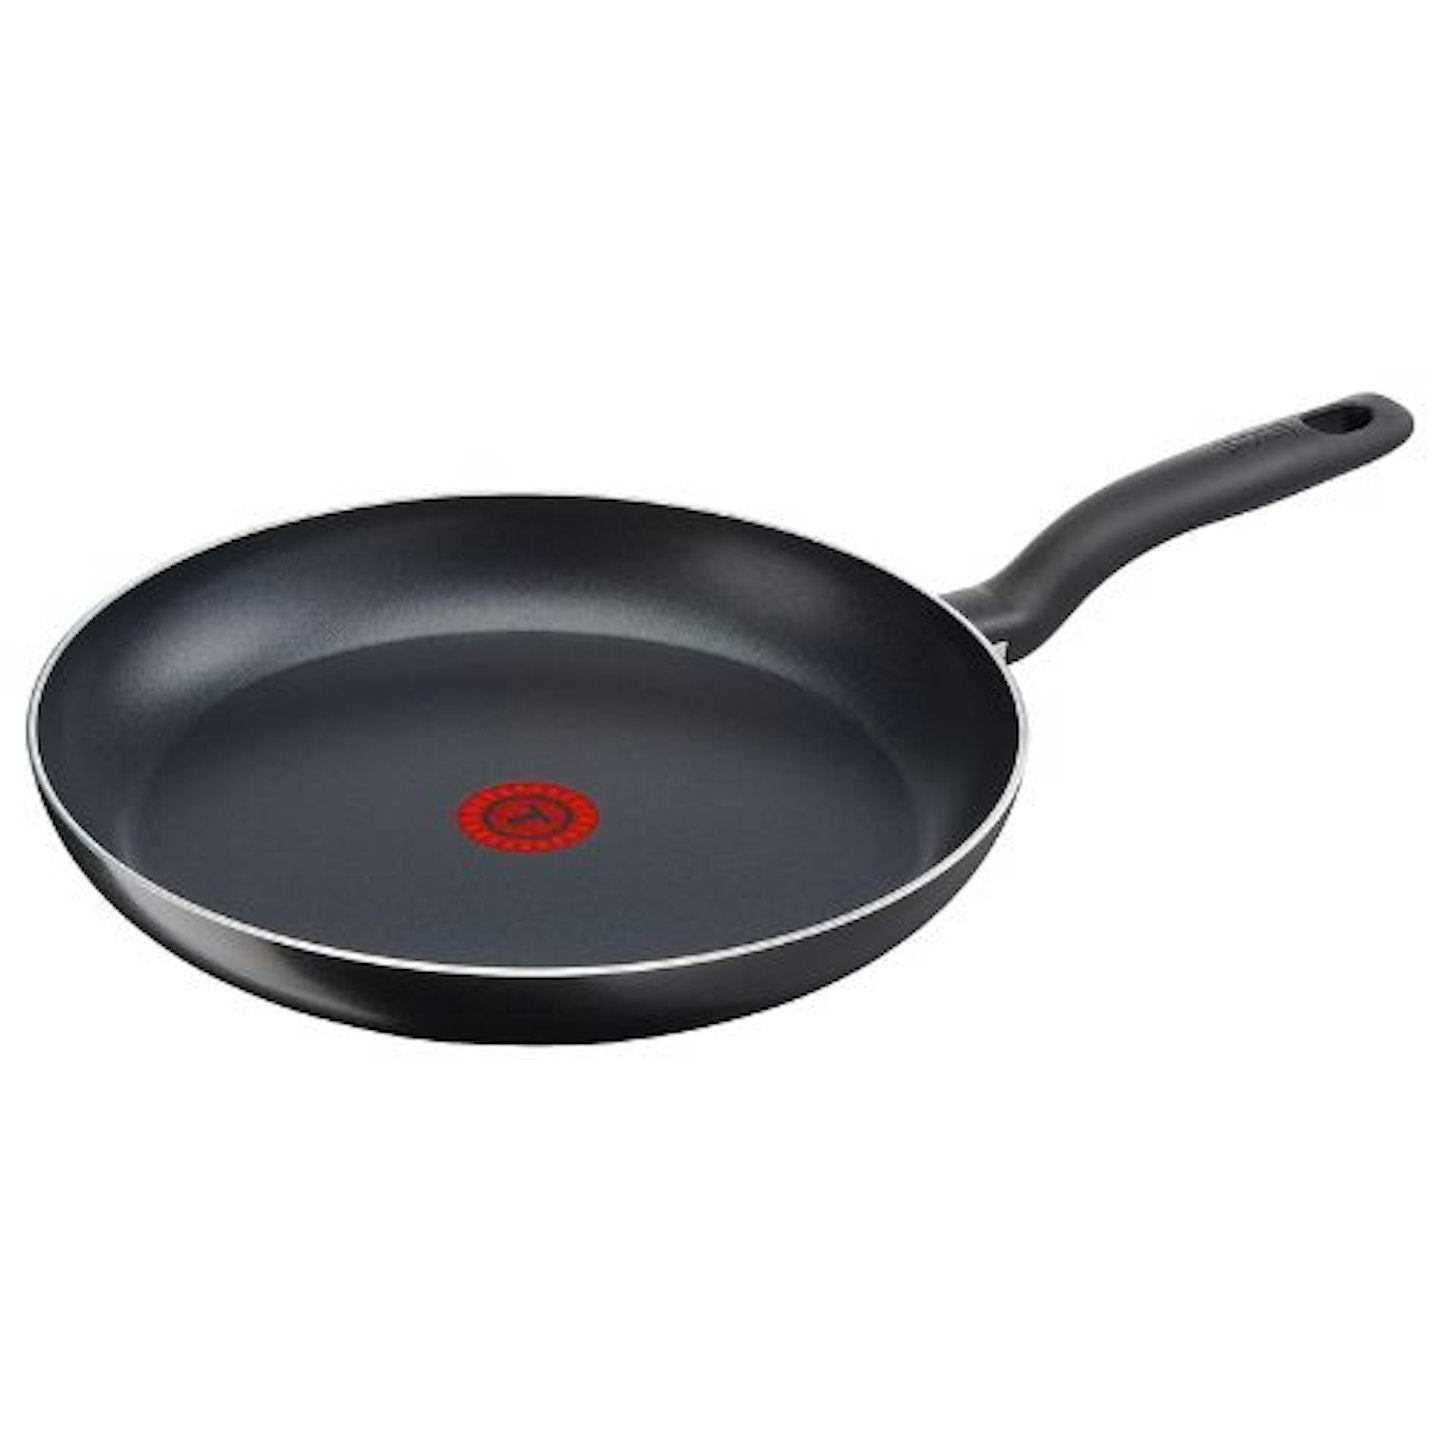 Tefal Precision Plus Non-Stick Frying Pan